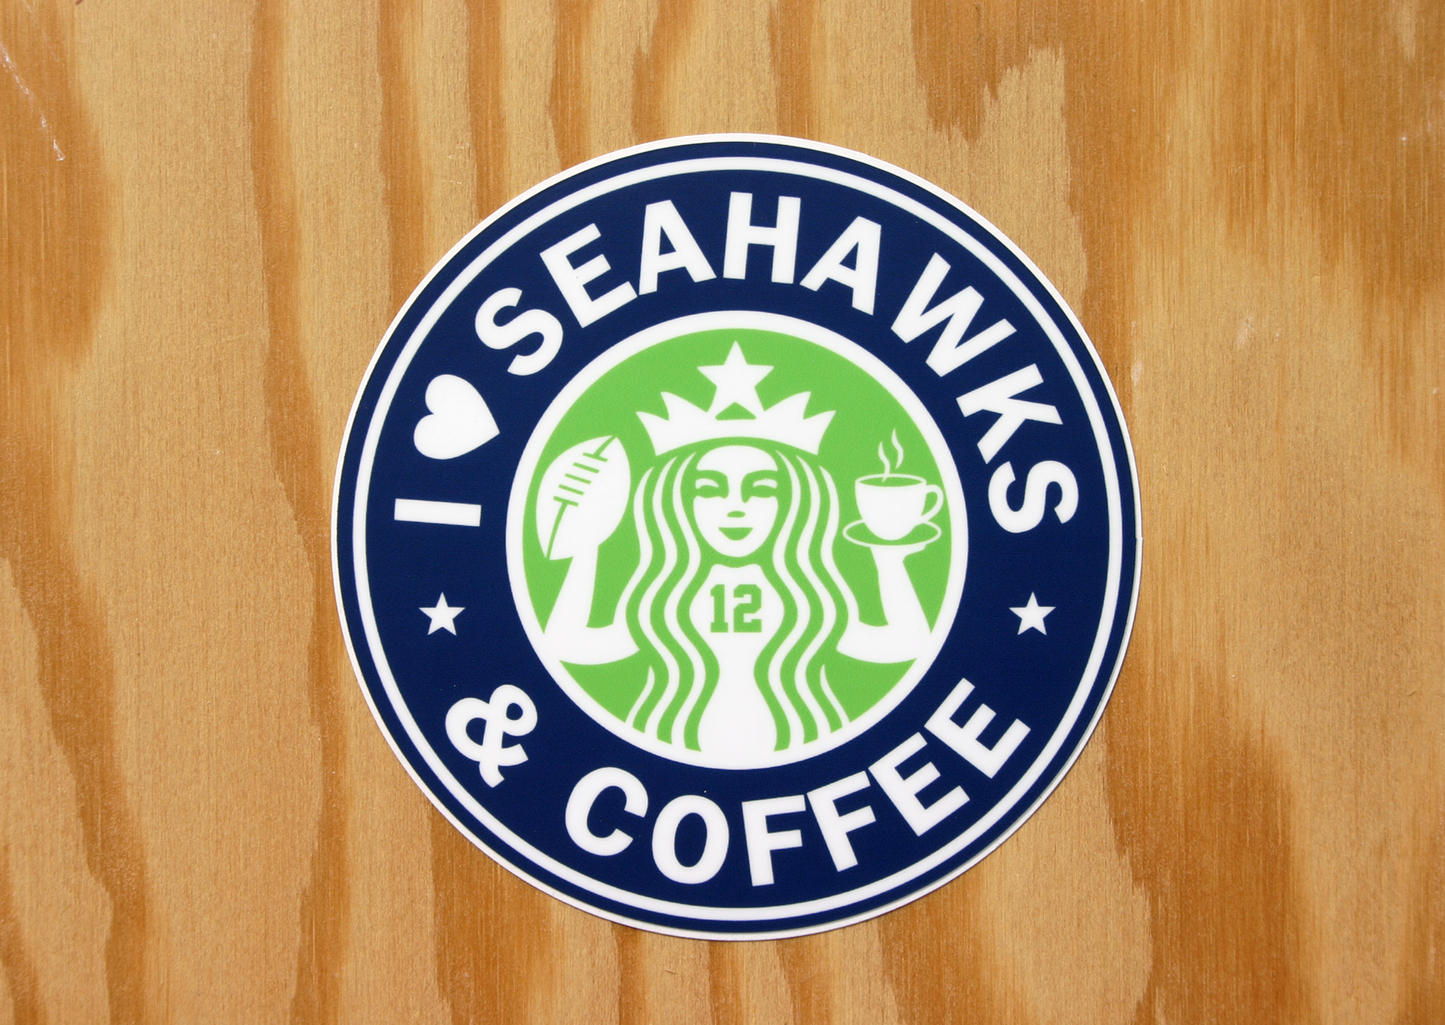 Seahawks & Coffee